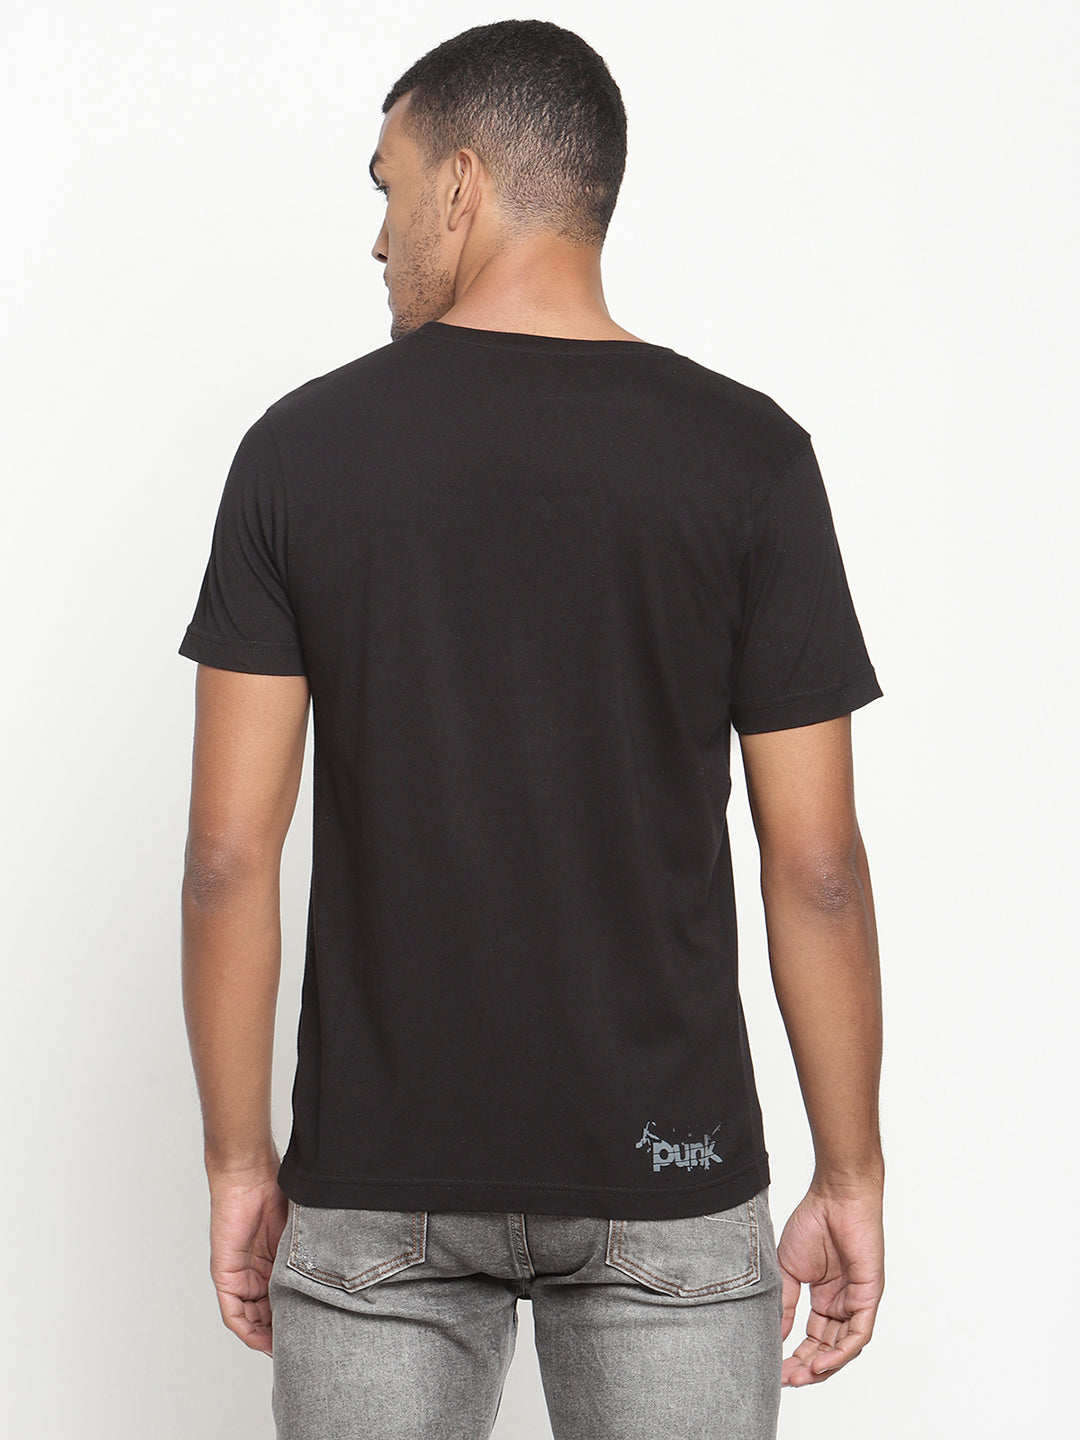 PUNK-UP-YOUR-SOUND Black T-Shirt